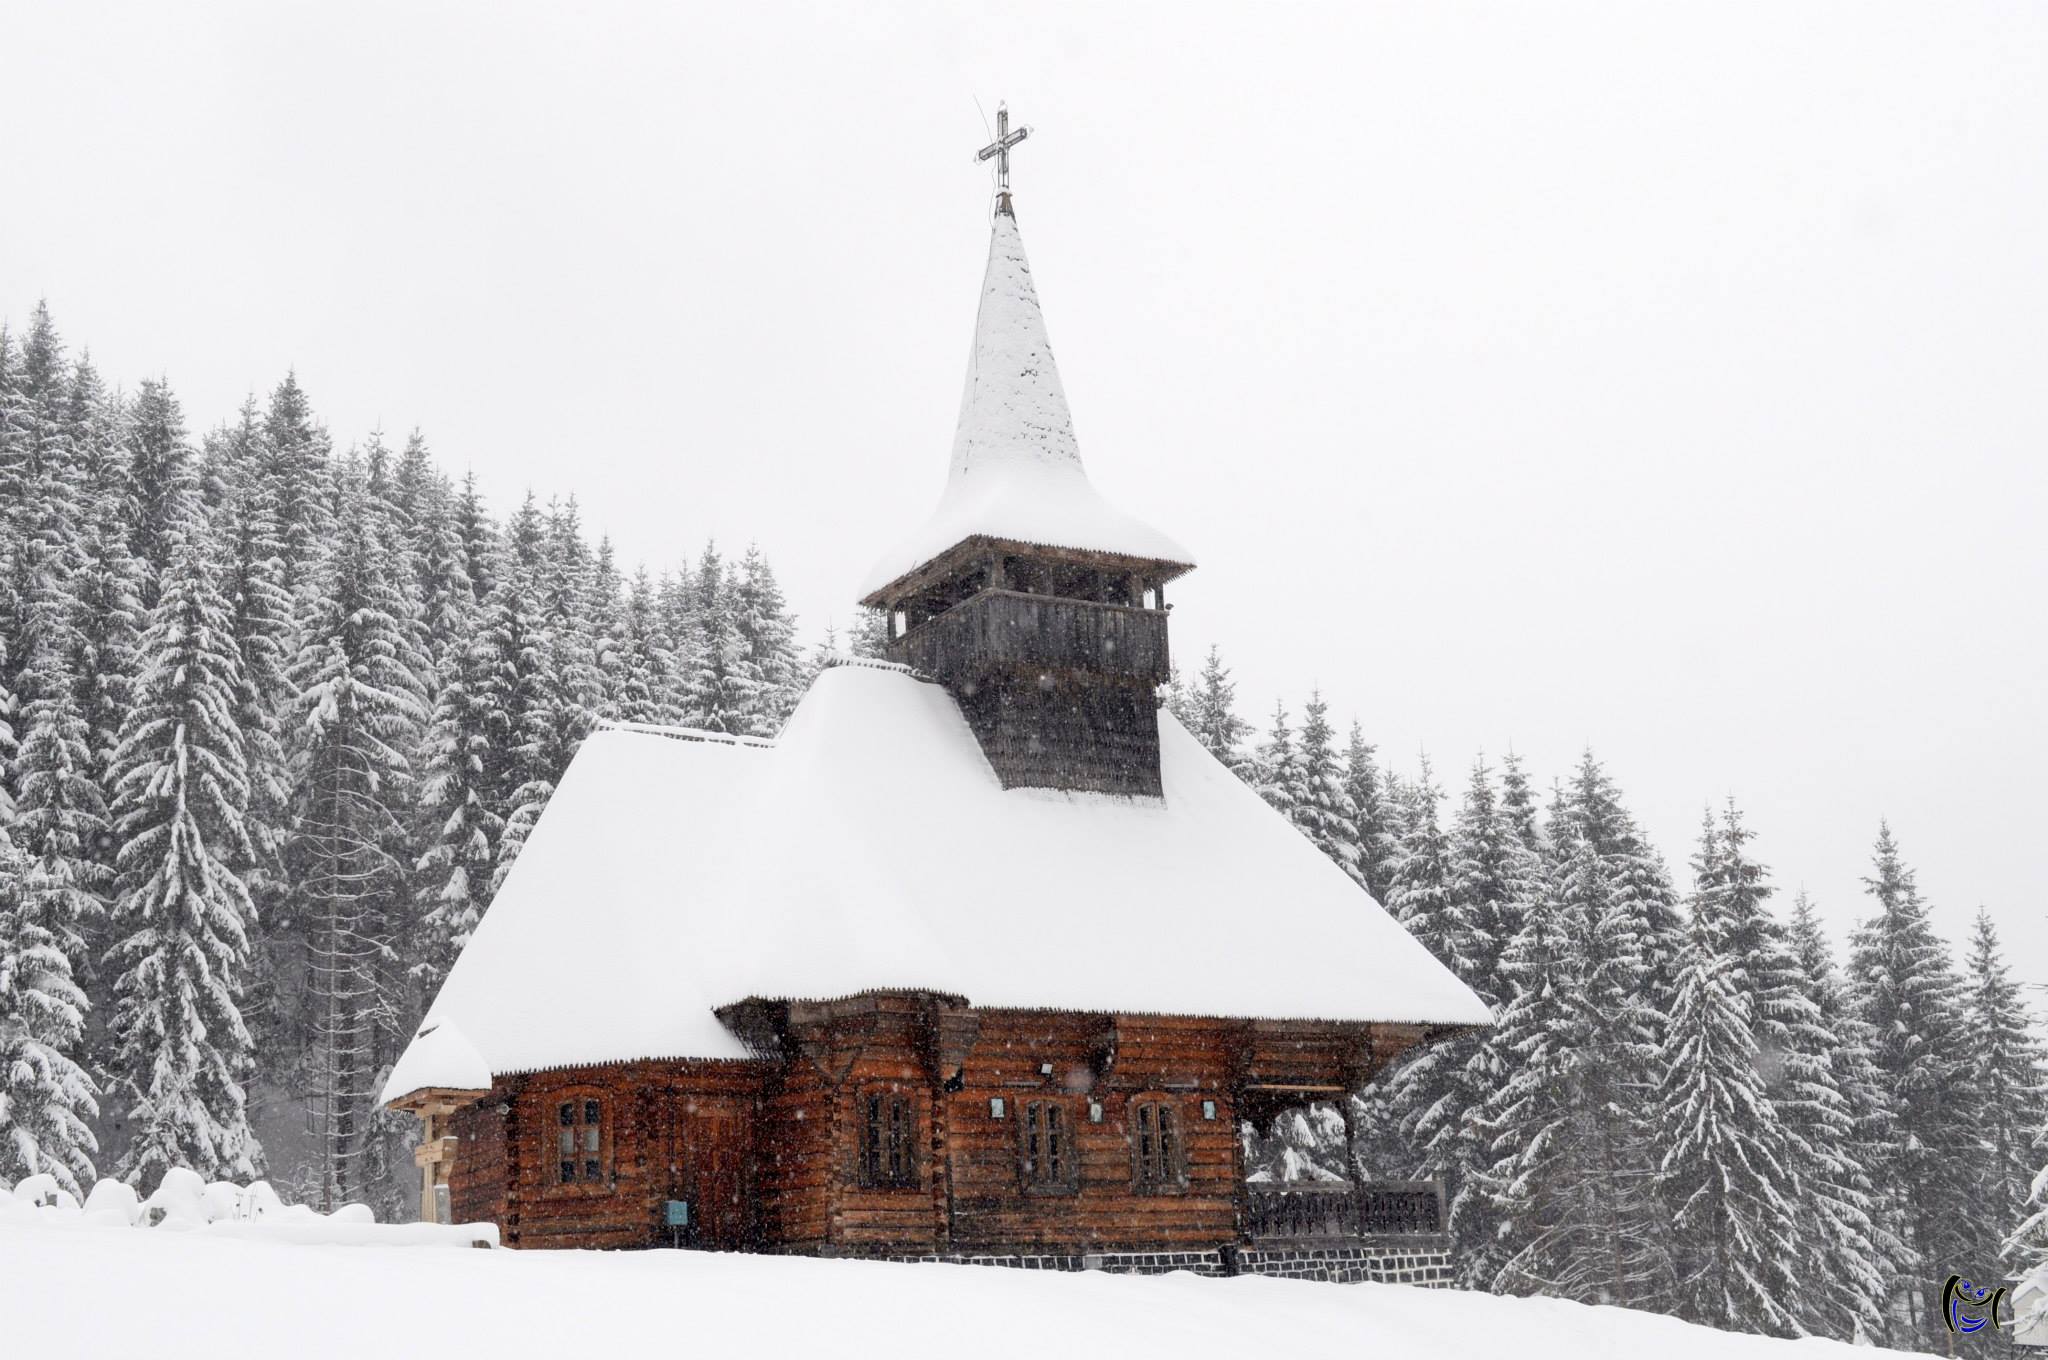  Biserica de lemn din Budesti - Călător prin Maramureș